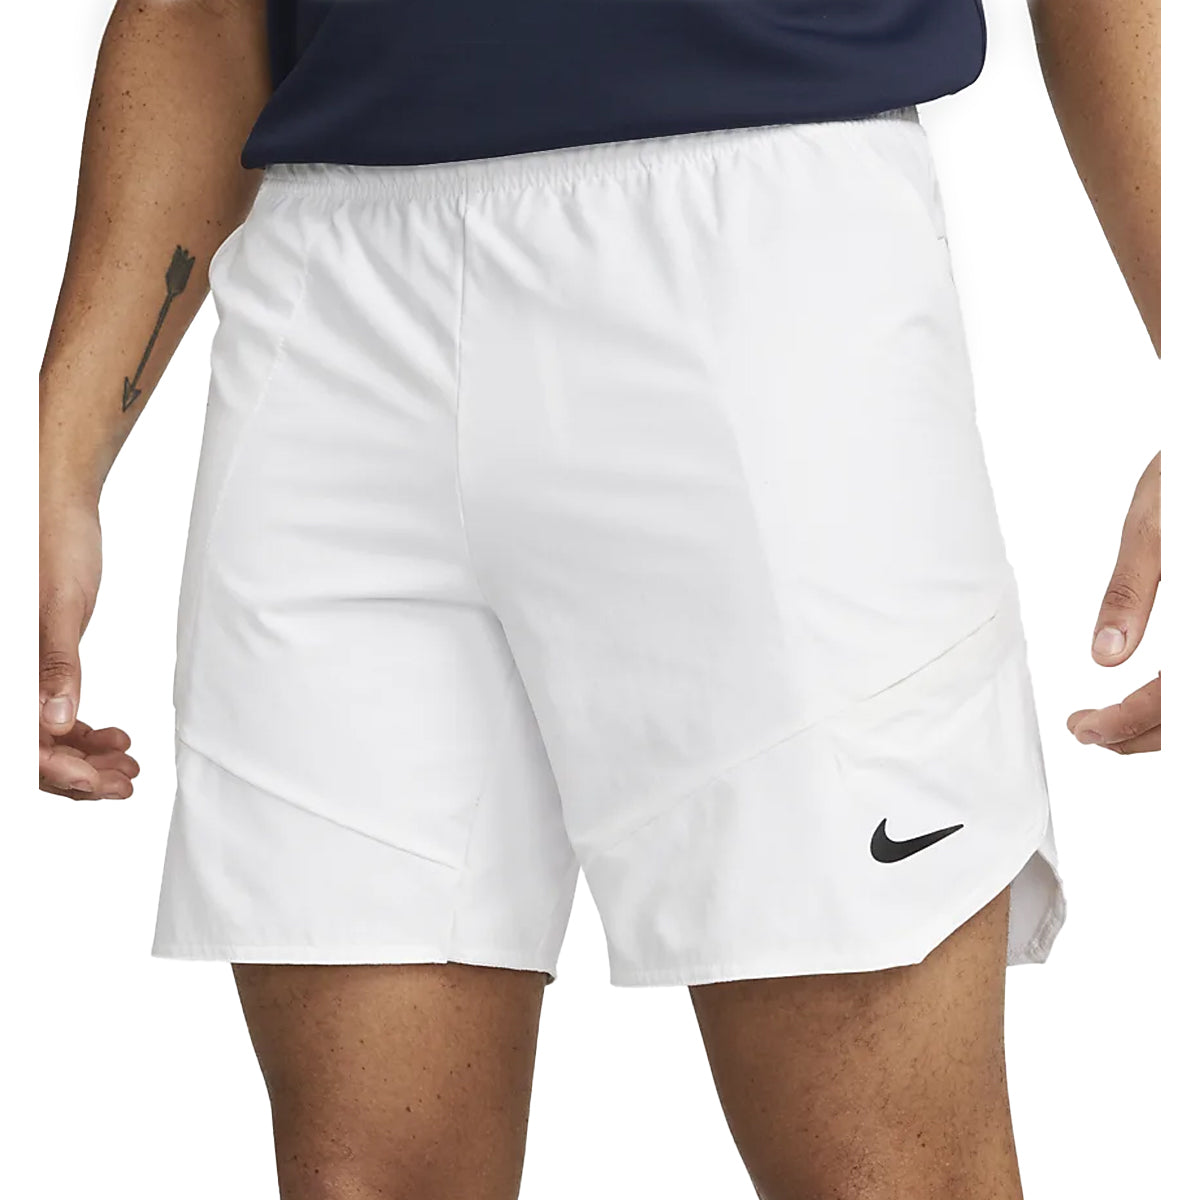 Short Nike Dri-Fit Advantage 7" (Homme) - Blanc/Noir